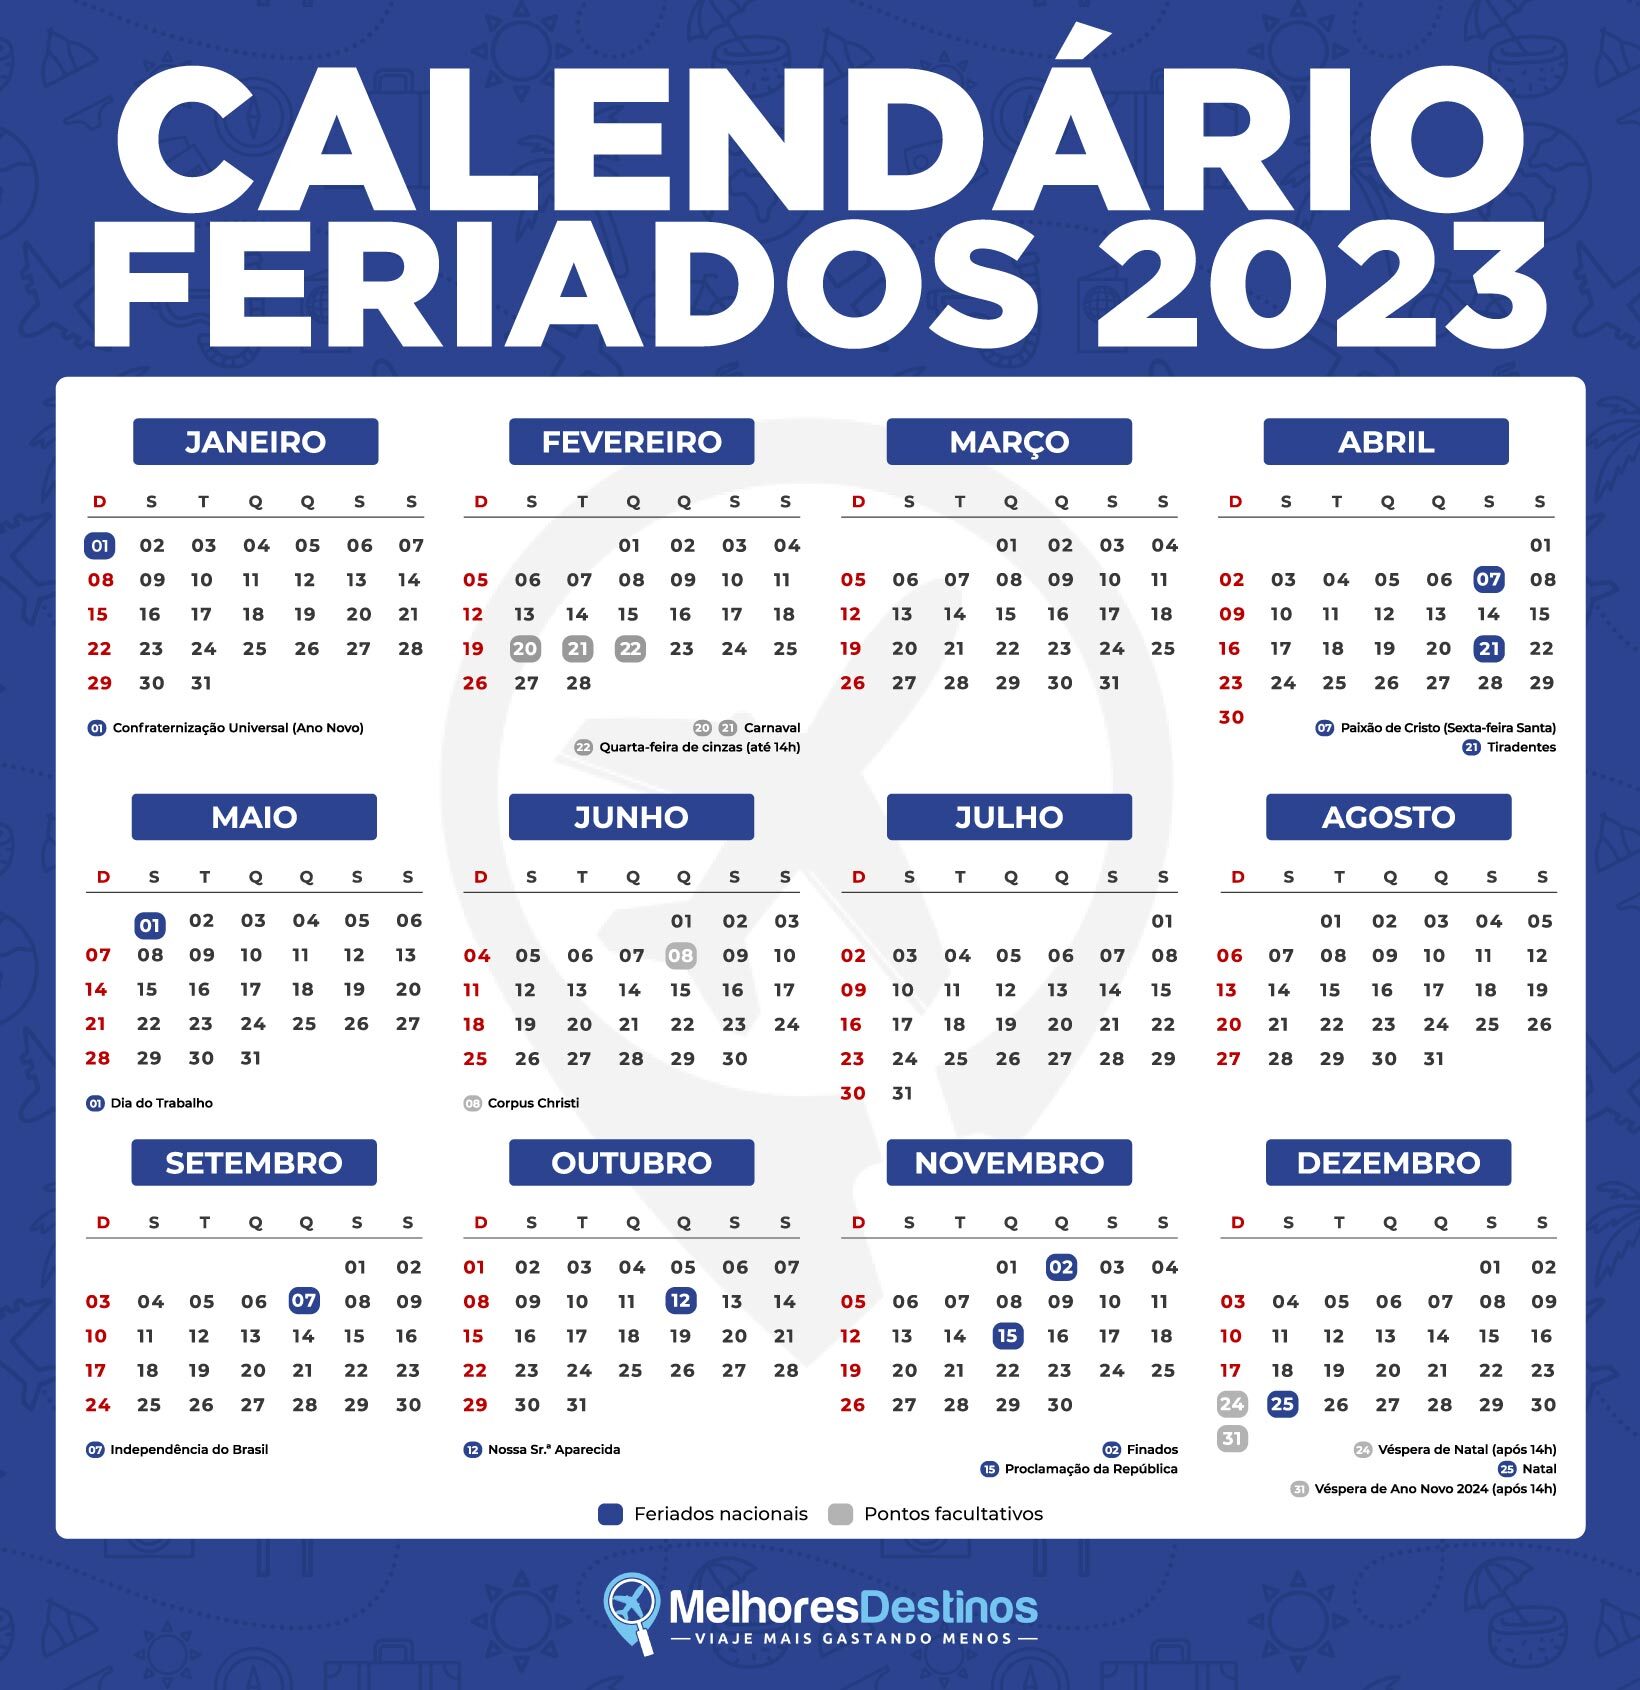  2023 တွင် 14 ရက်အားလပ်ရက်ရှိနိုင်သည်- နောက်လာမည့်နိုင်ငံတော်အားလပ်ရက်ဖြစ်မည်ကိုစစ်ဆေးပါ။